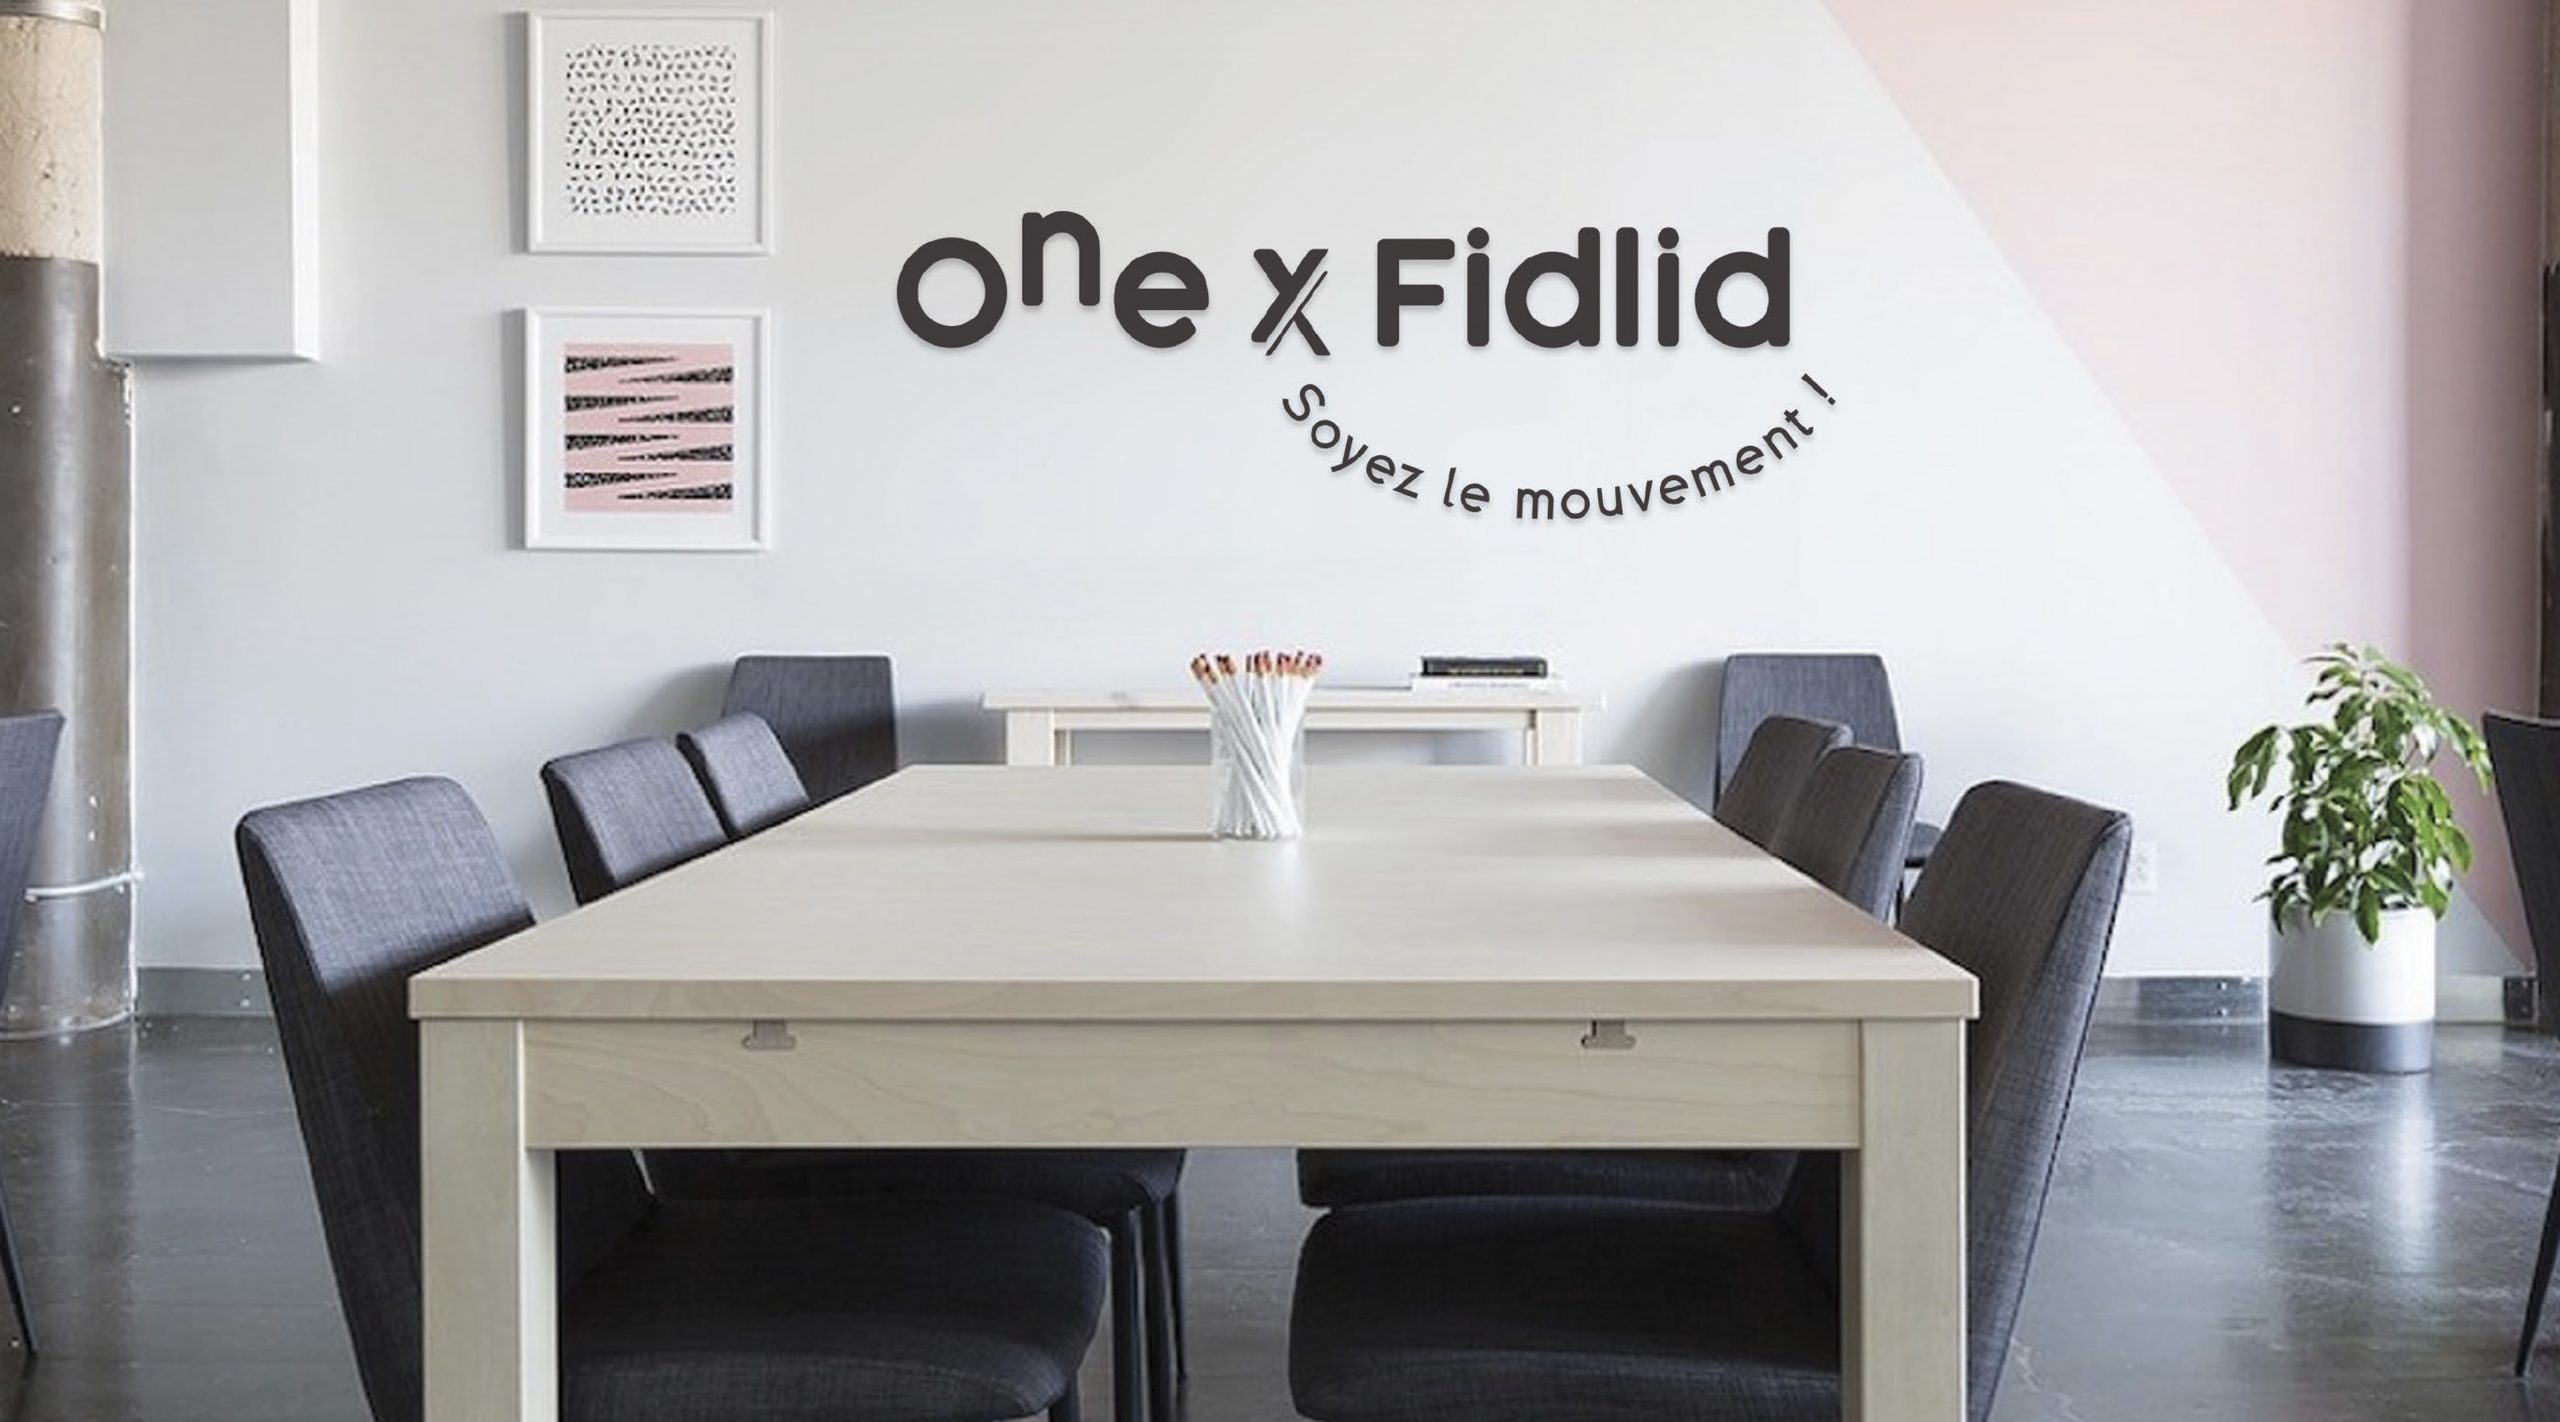 bureau one x fidlid avec le logo intégré à l'agence